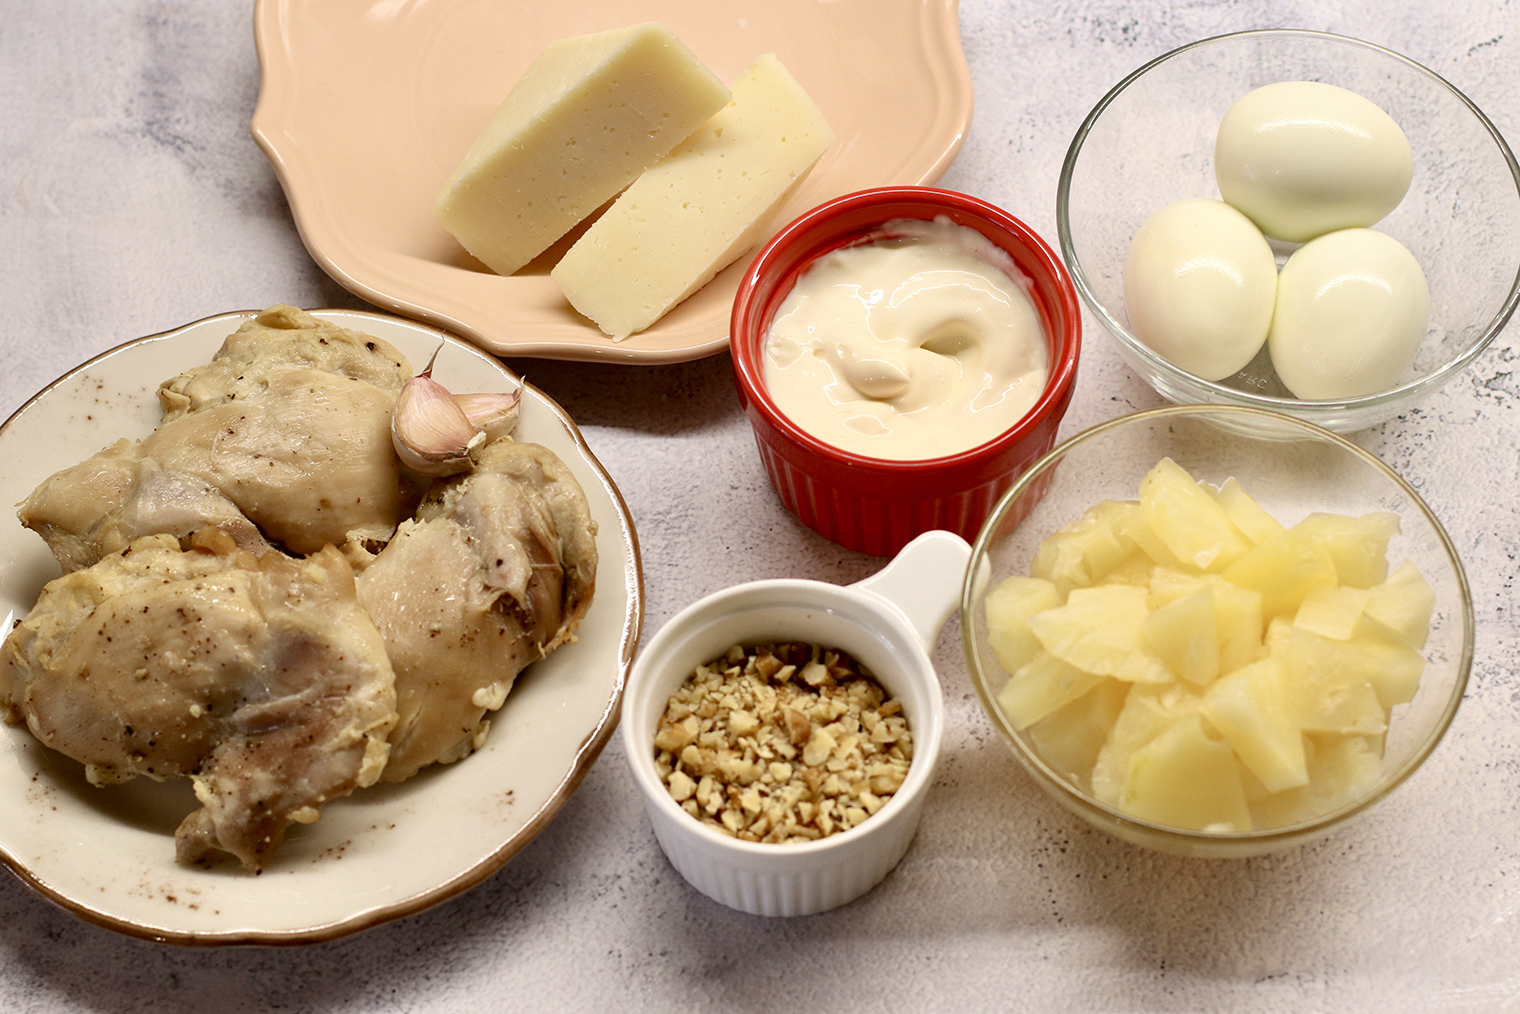 Салат с копченой курицей, ананасами и кукурузой